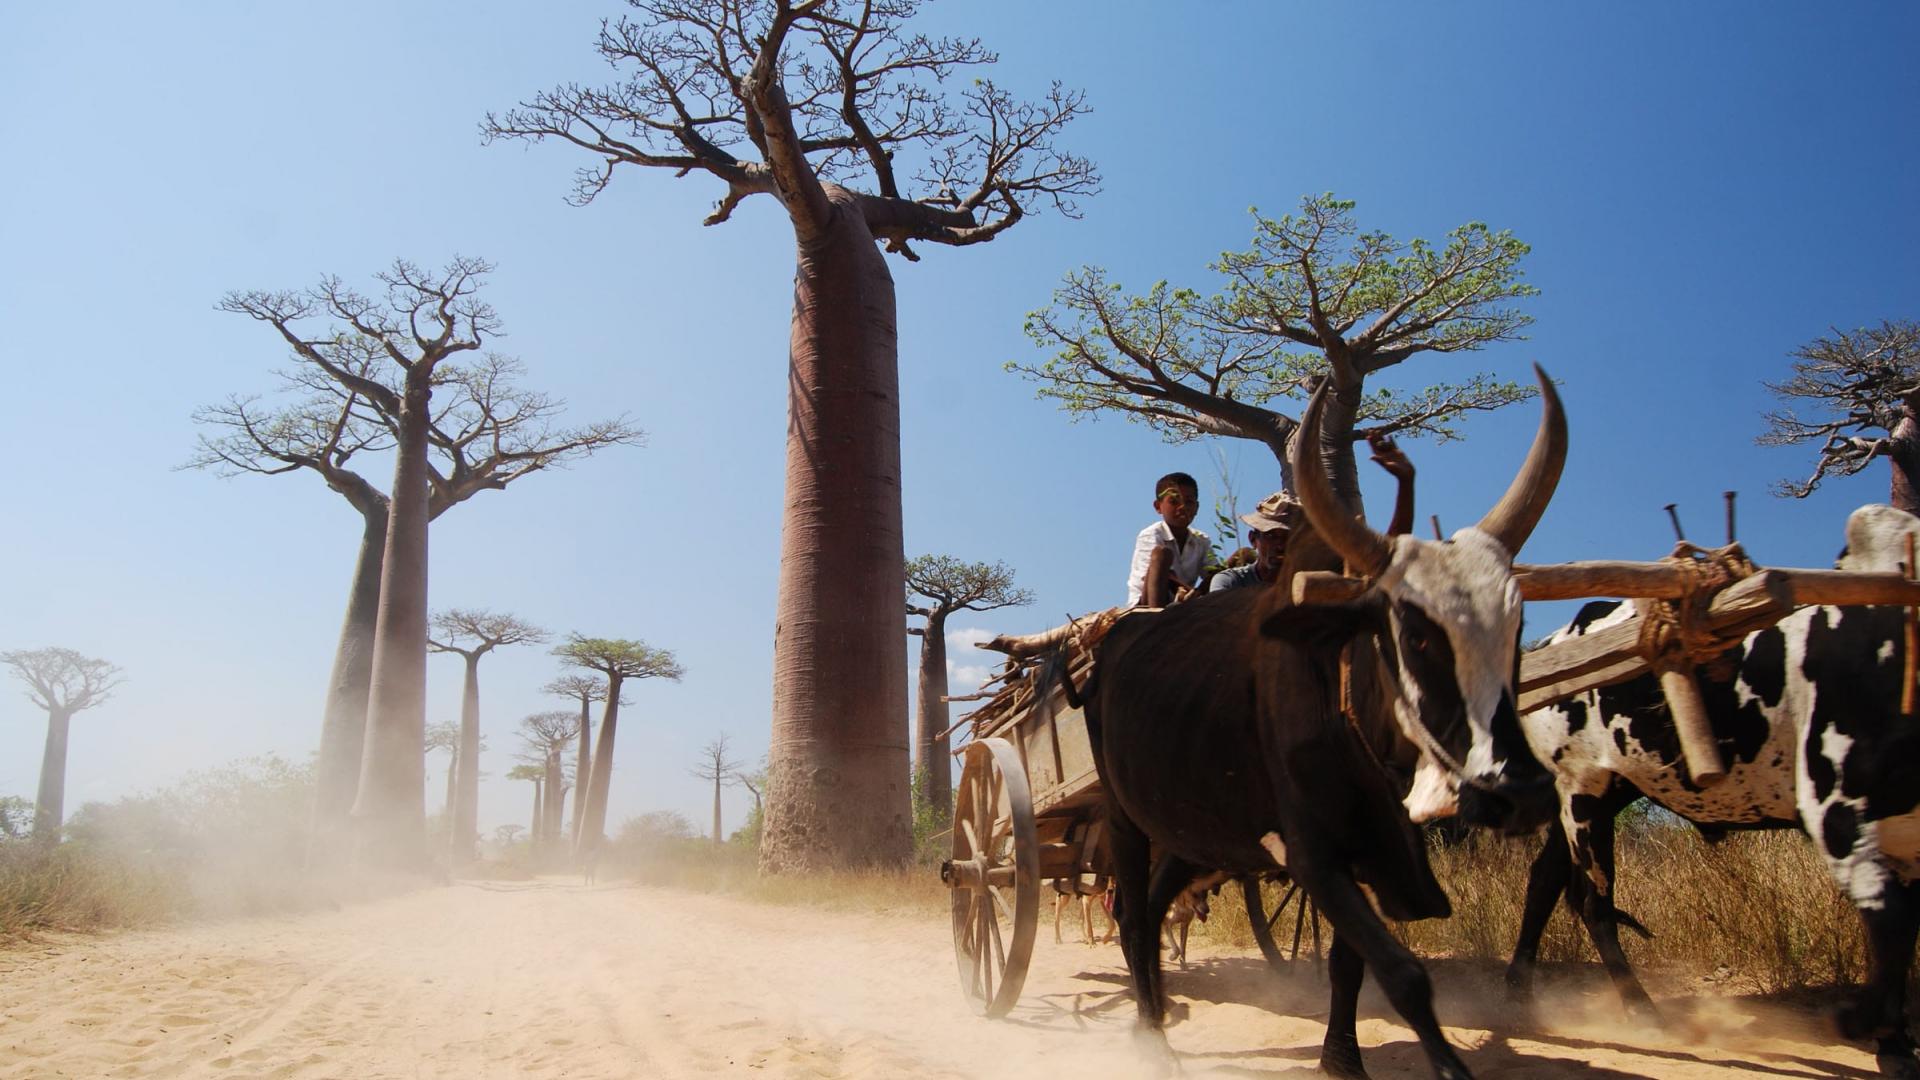 Allée des baobabs, Morondava (Madagascar)